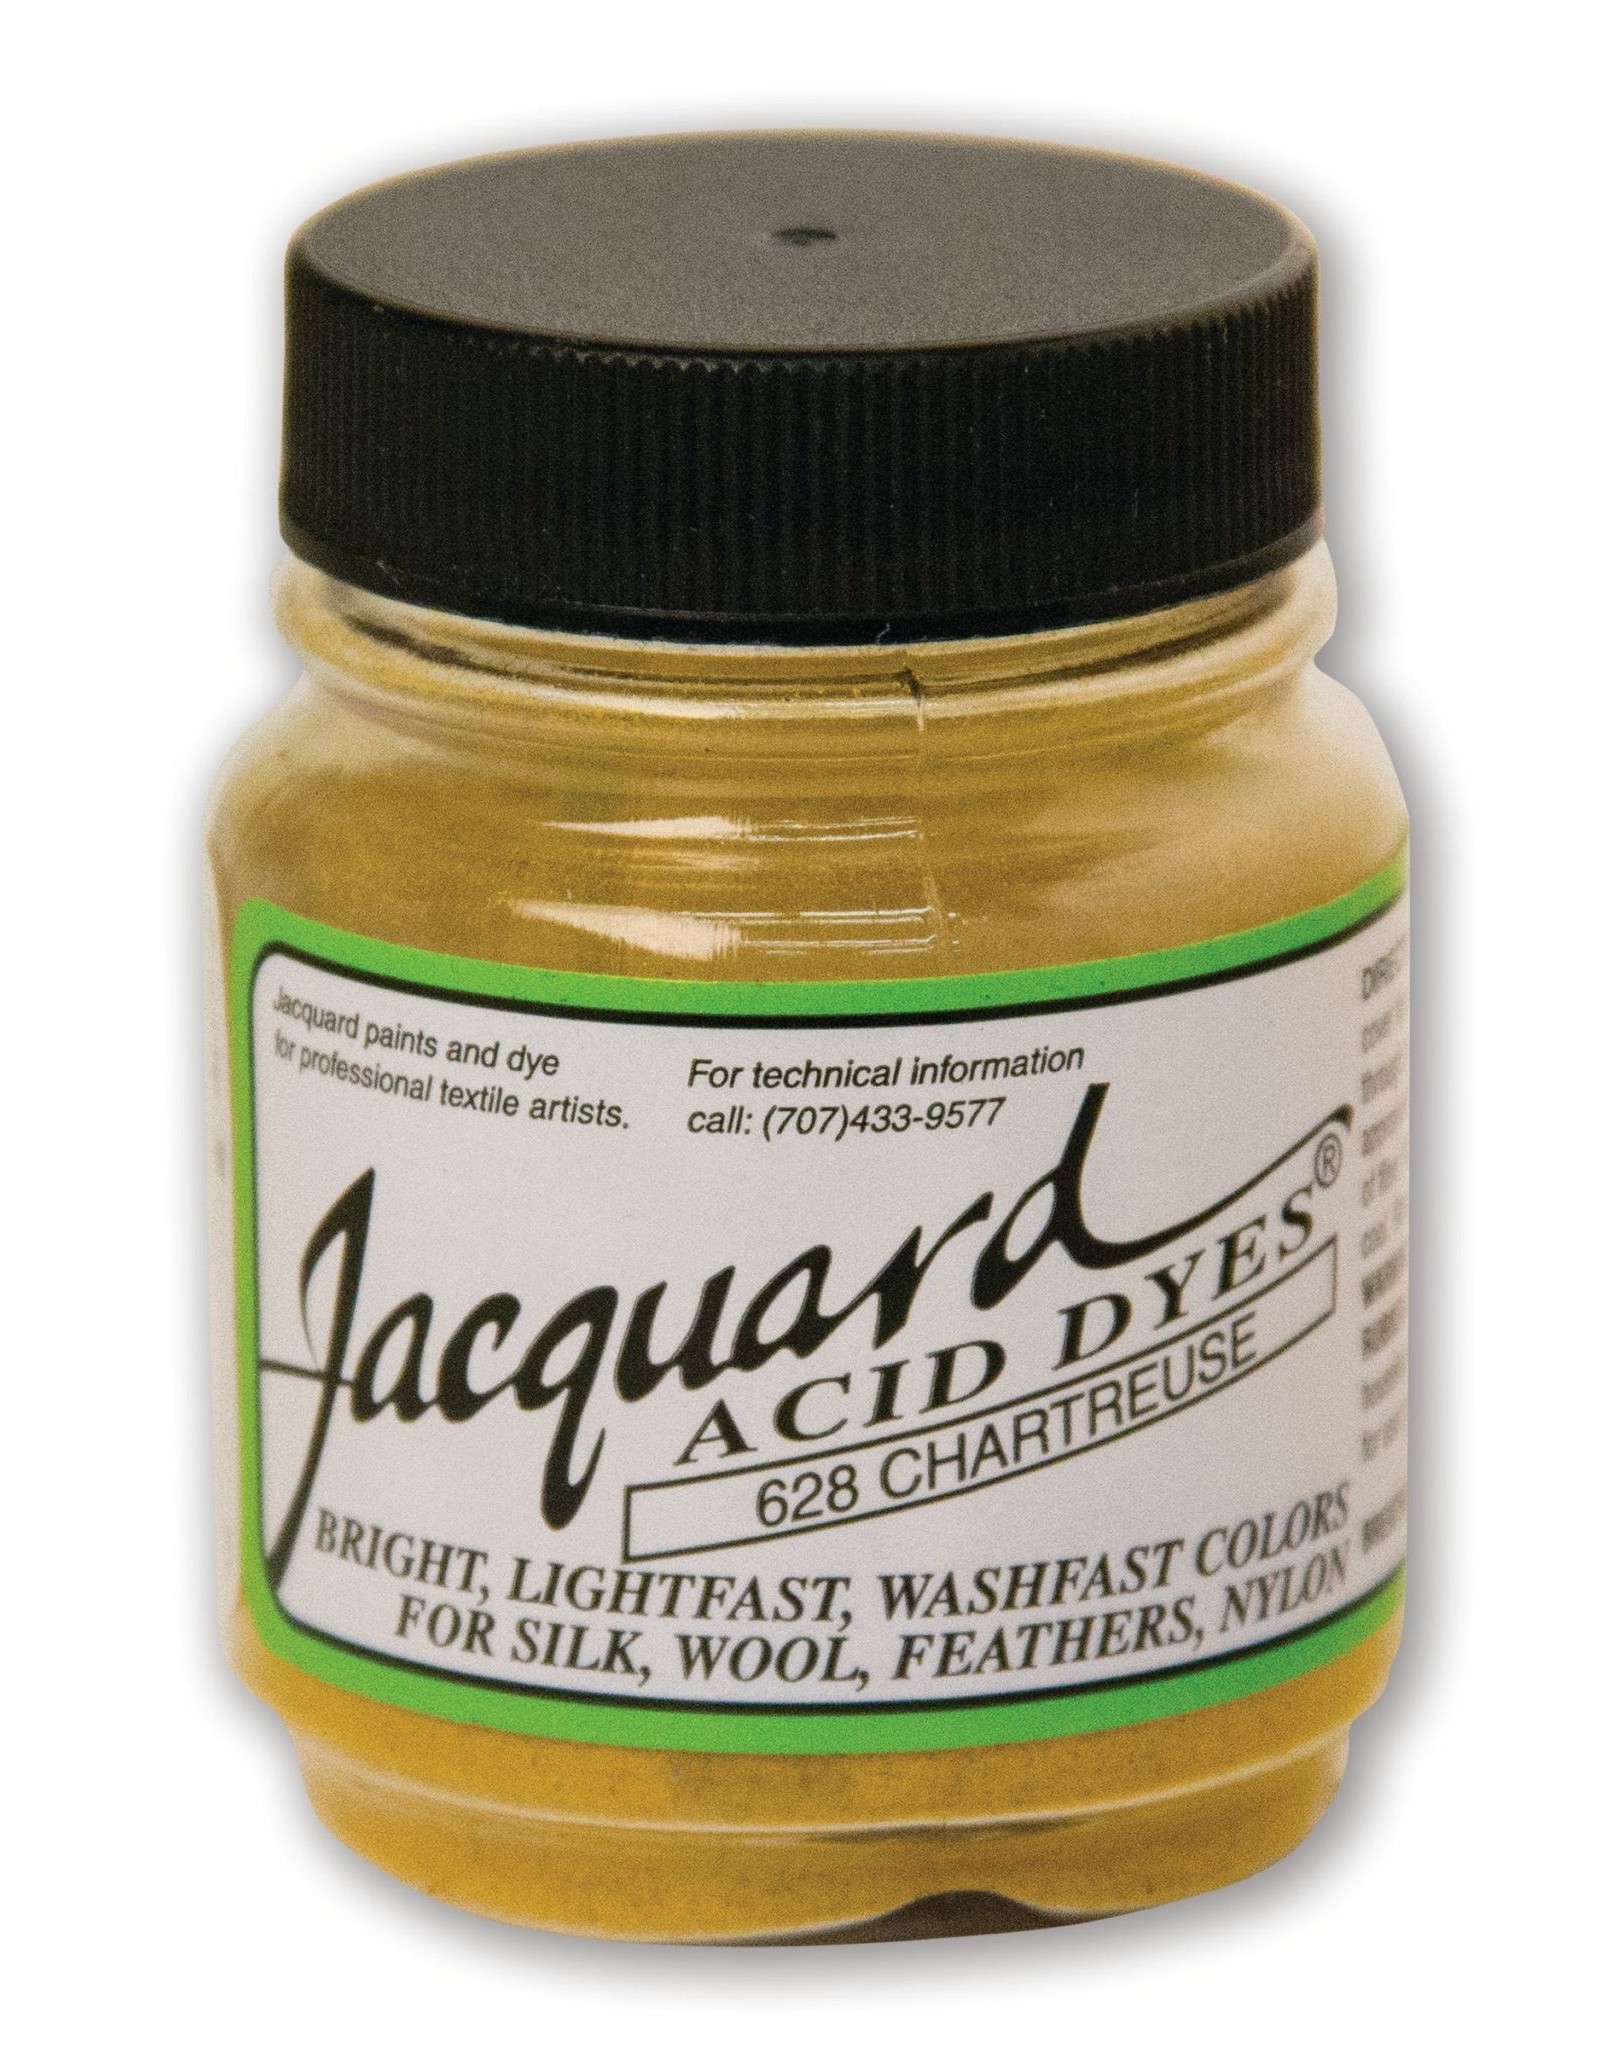 Jacquard Jacquard Acid Dye, #628 Chartreuse ½oz